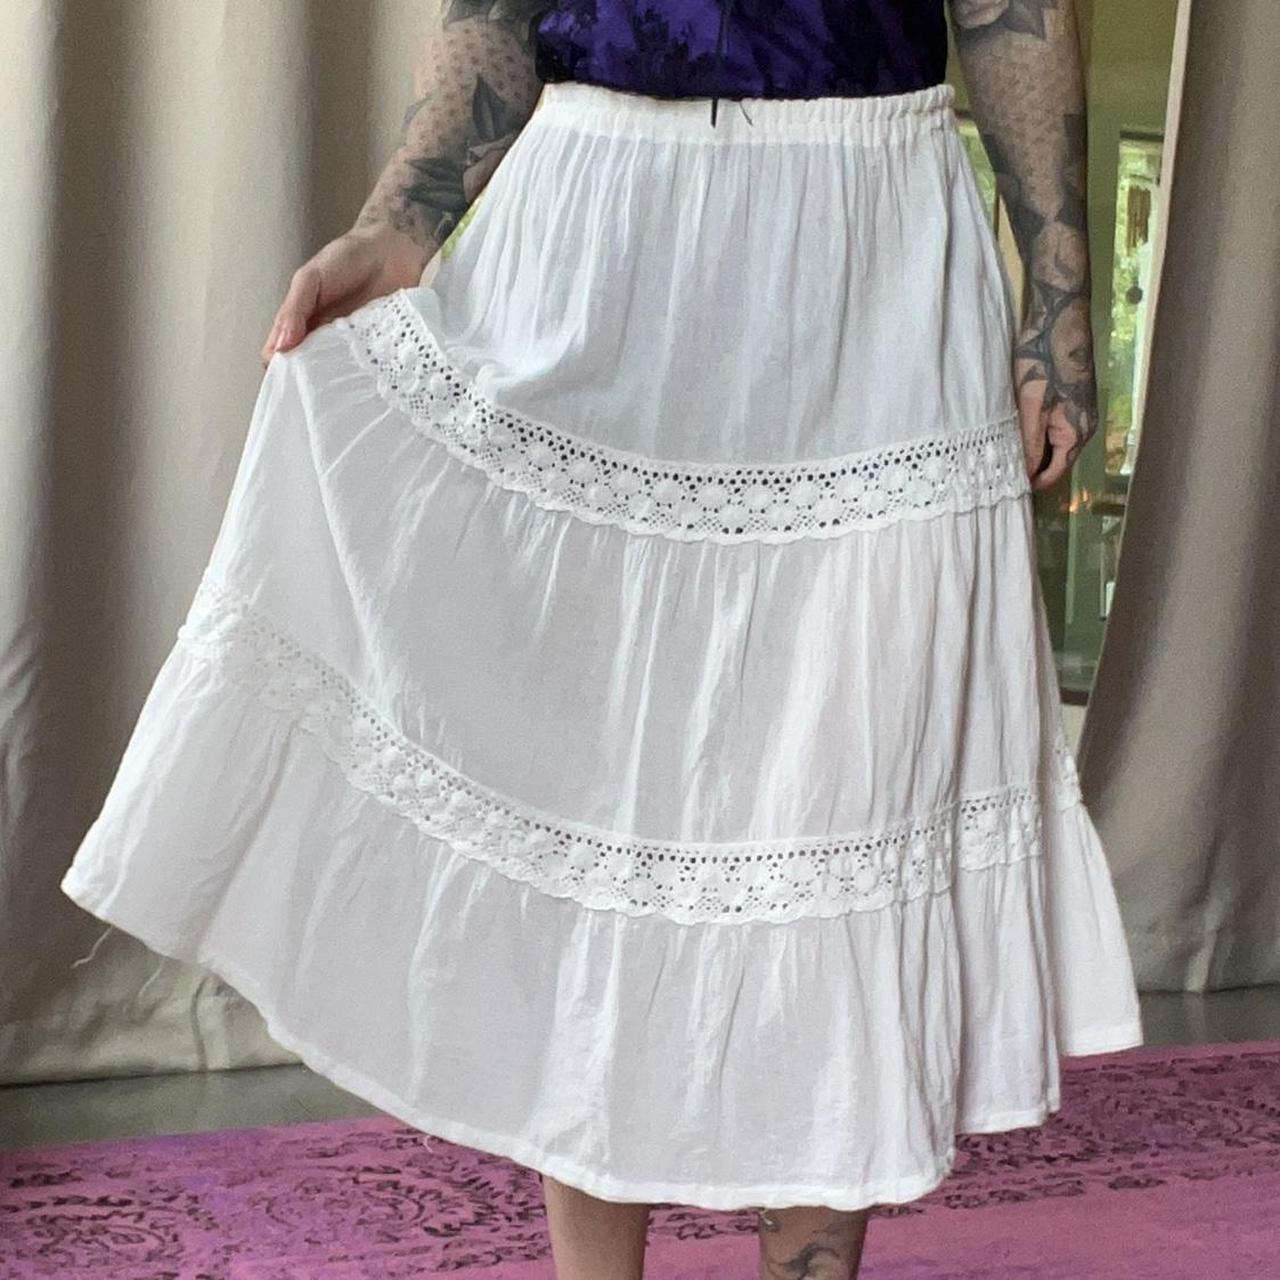 Vintage Handmade 90s White Boho Skirt A bit... - Depop